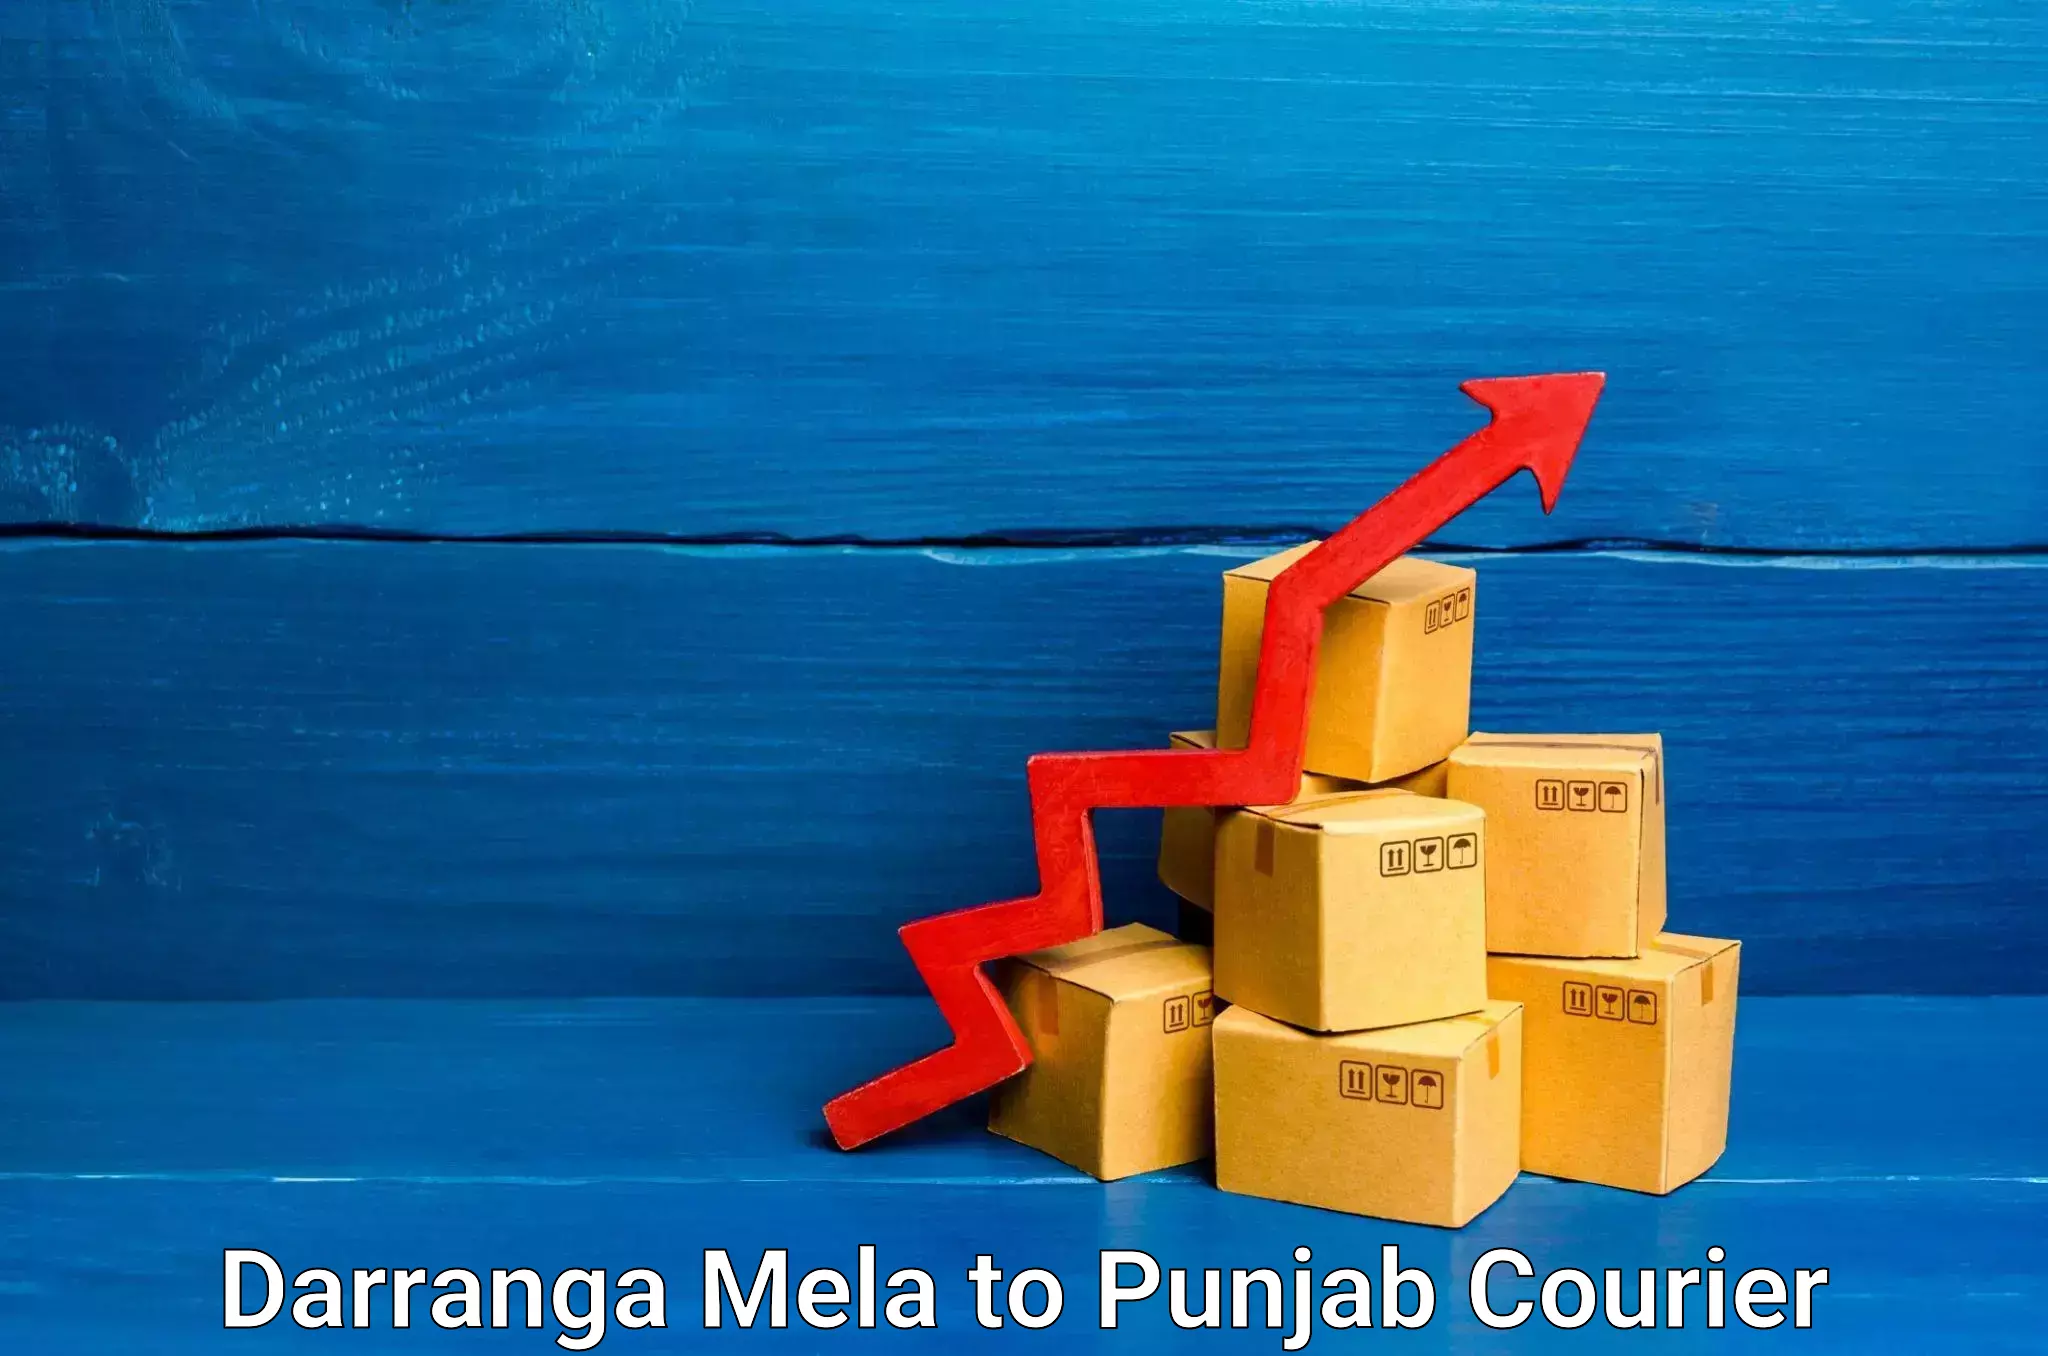 Courier service partnerships Darranga Mela to Tarsikka